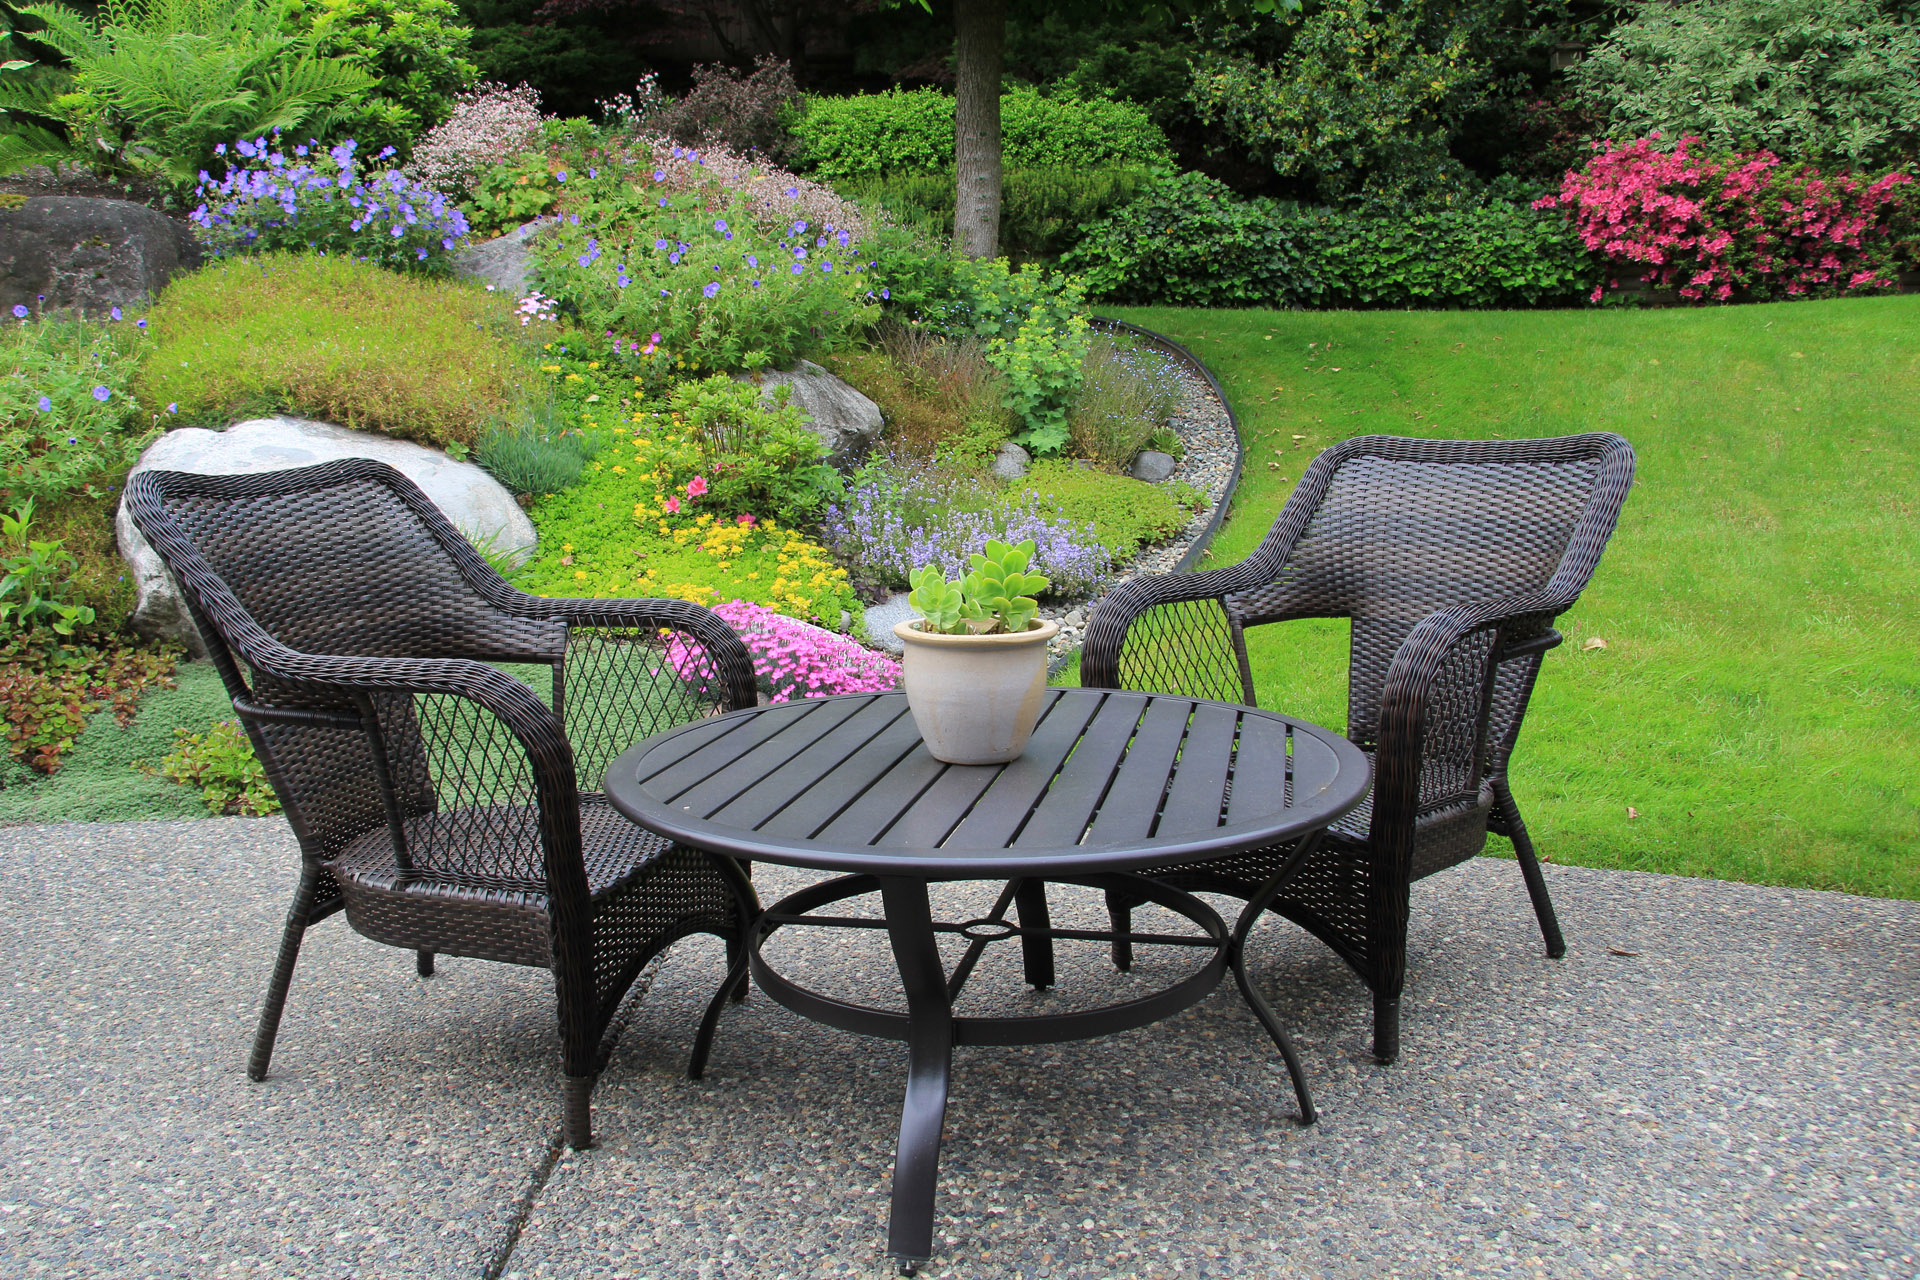 zwei geflochtene Sitzmöbel am Tisch im Garten